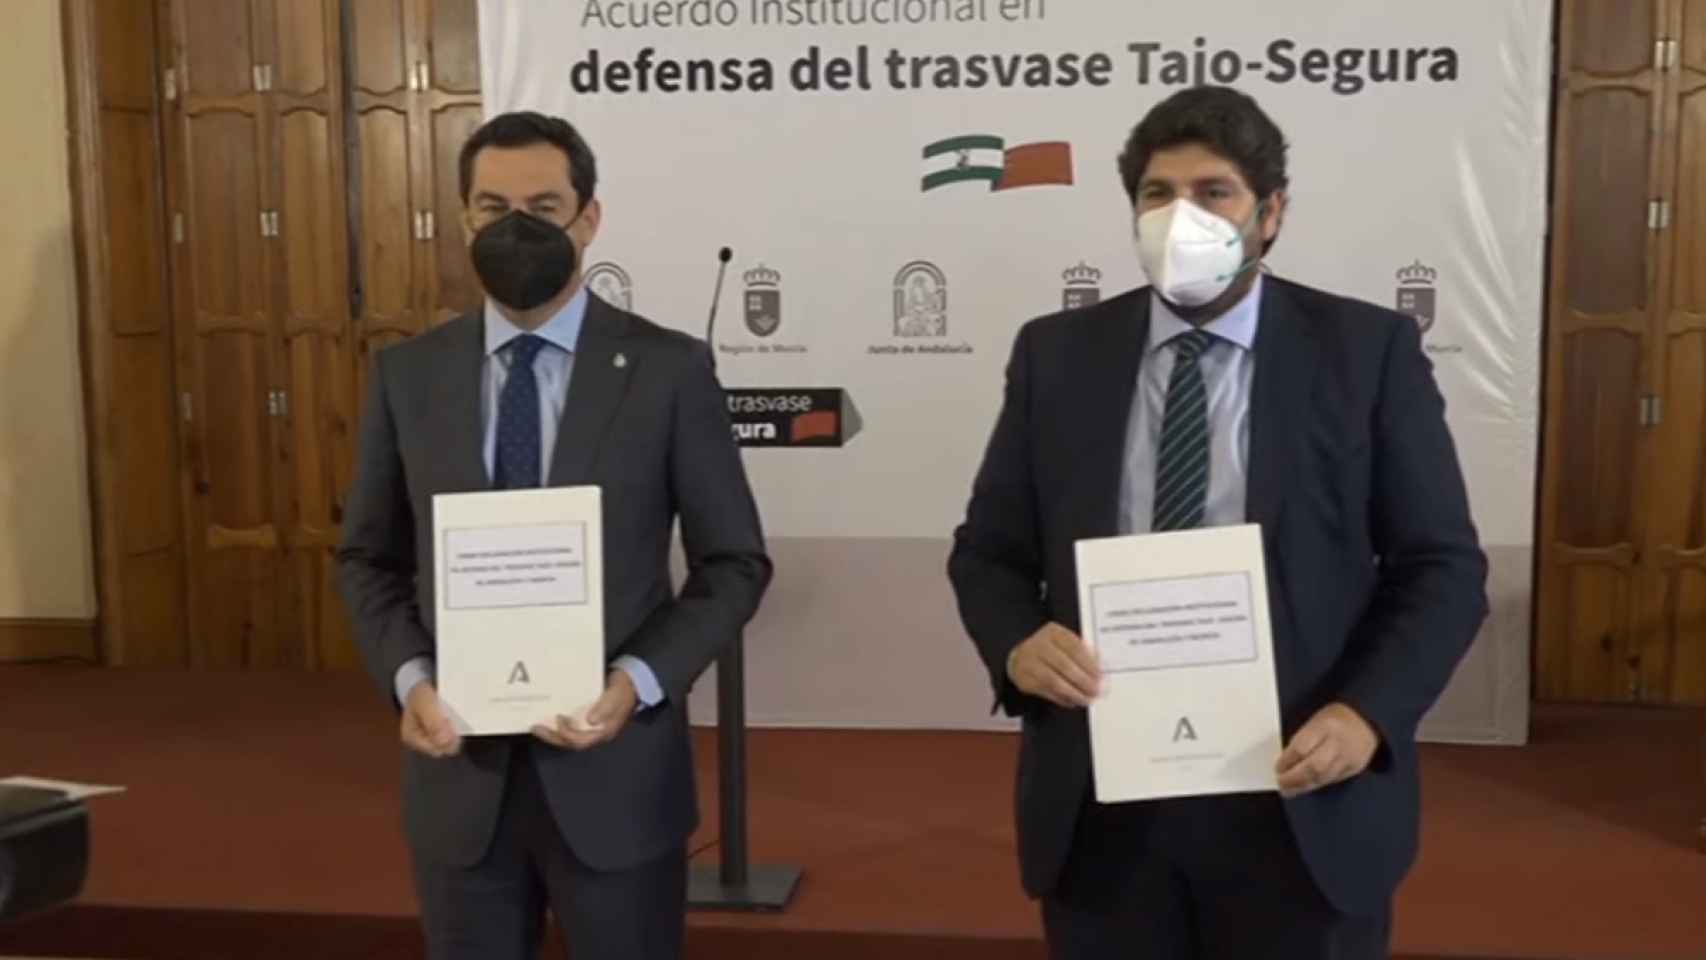 Los presidentes murciano y andaluz mostrando el acuerdo institucional.